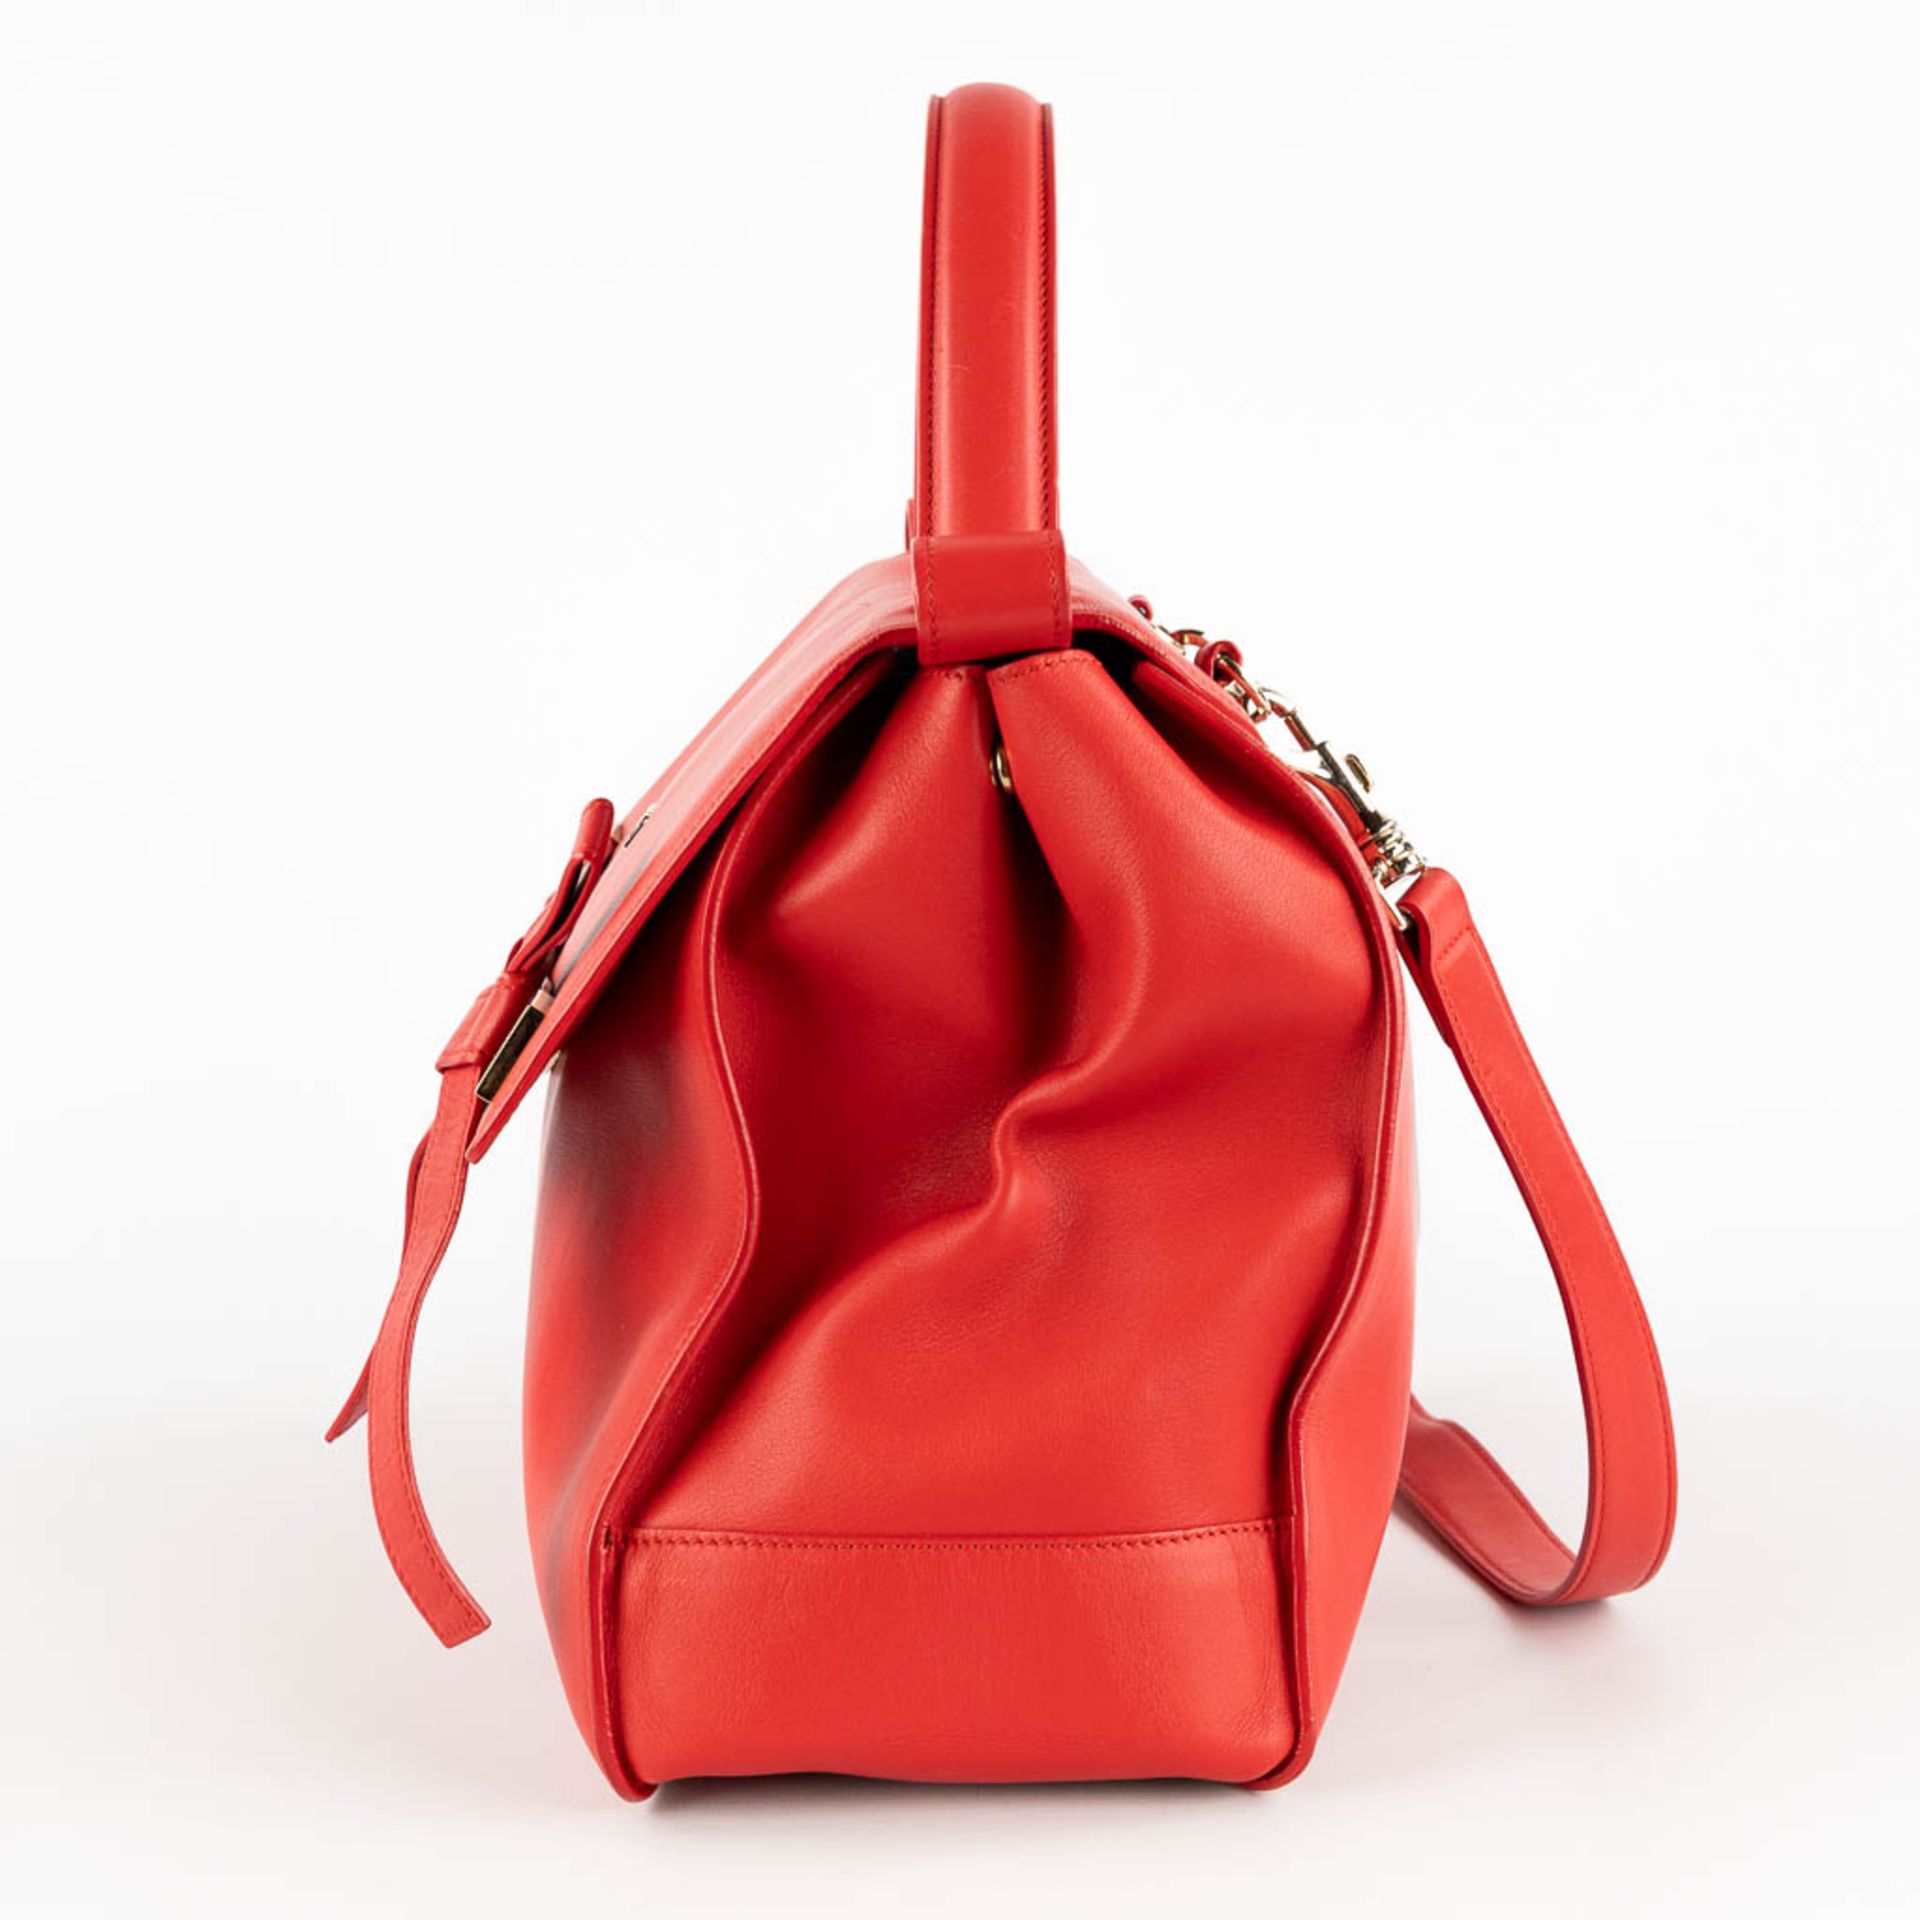 Escada, a handbag made of red leather. (W:33 x H:28 cm) - Image 4 of 17